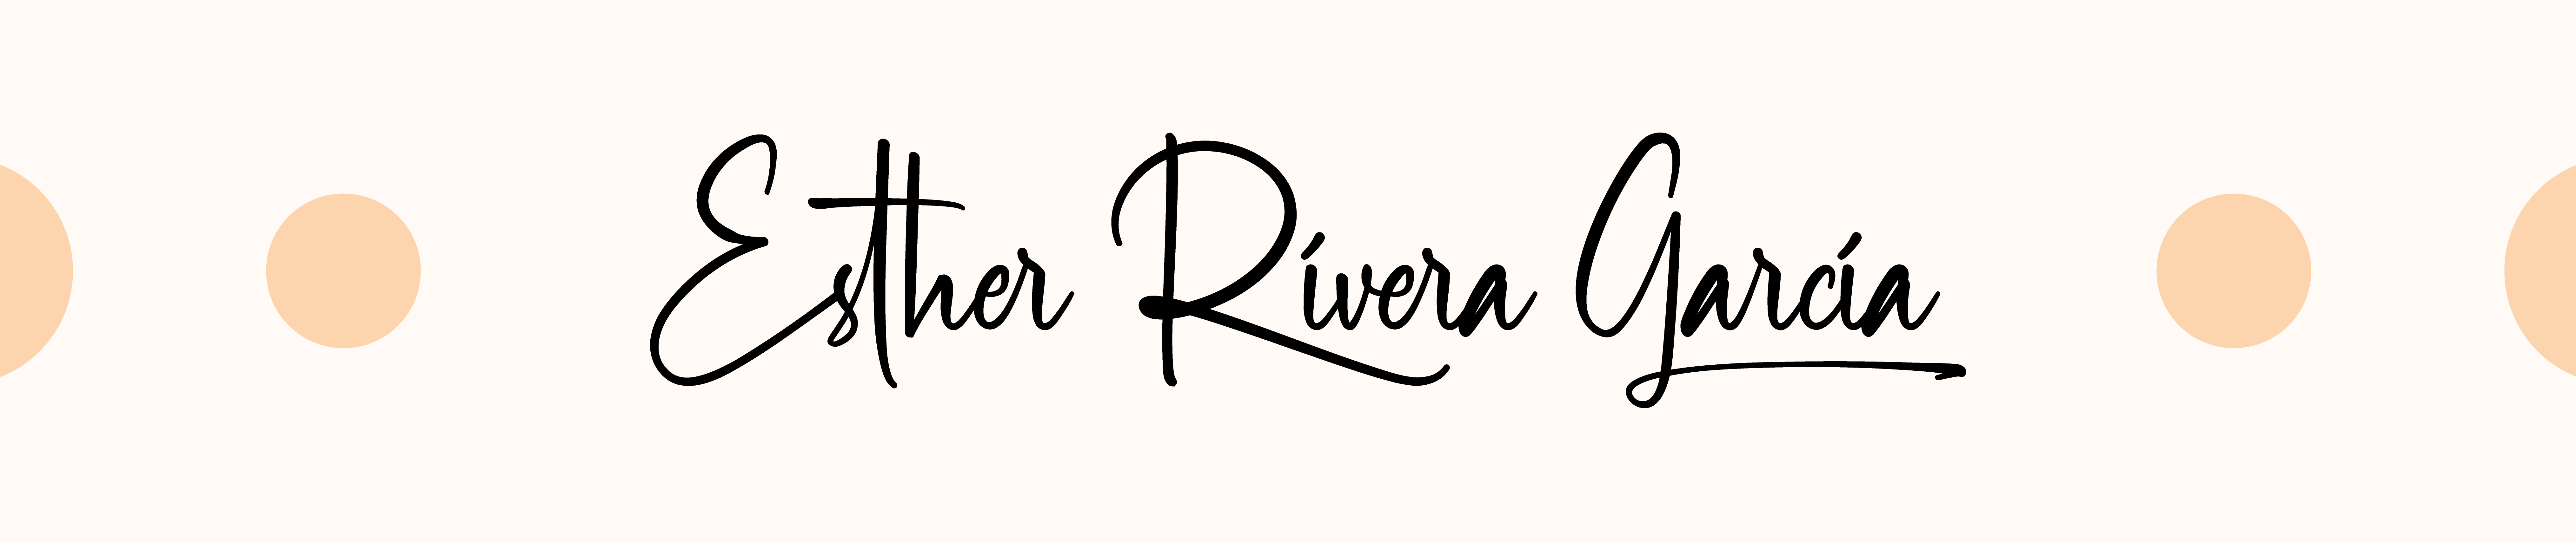 Esther Rivera Garcia's profile banner